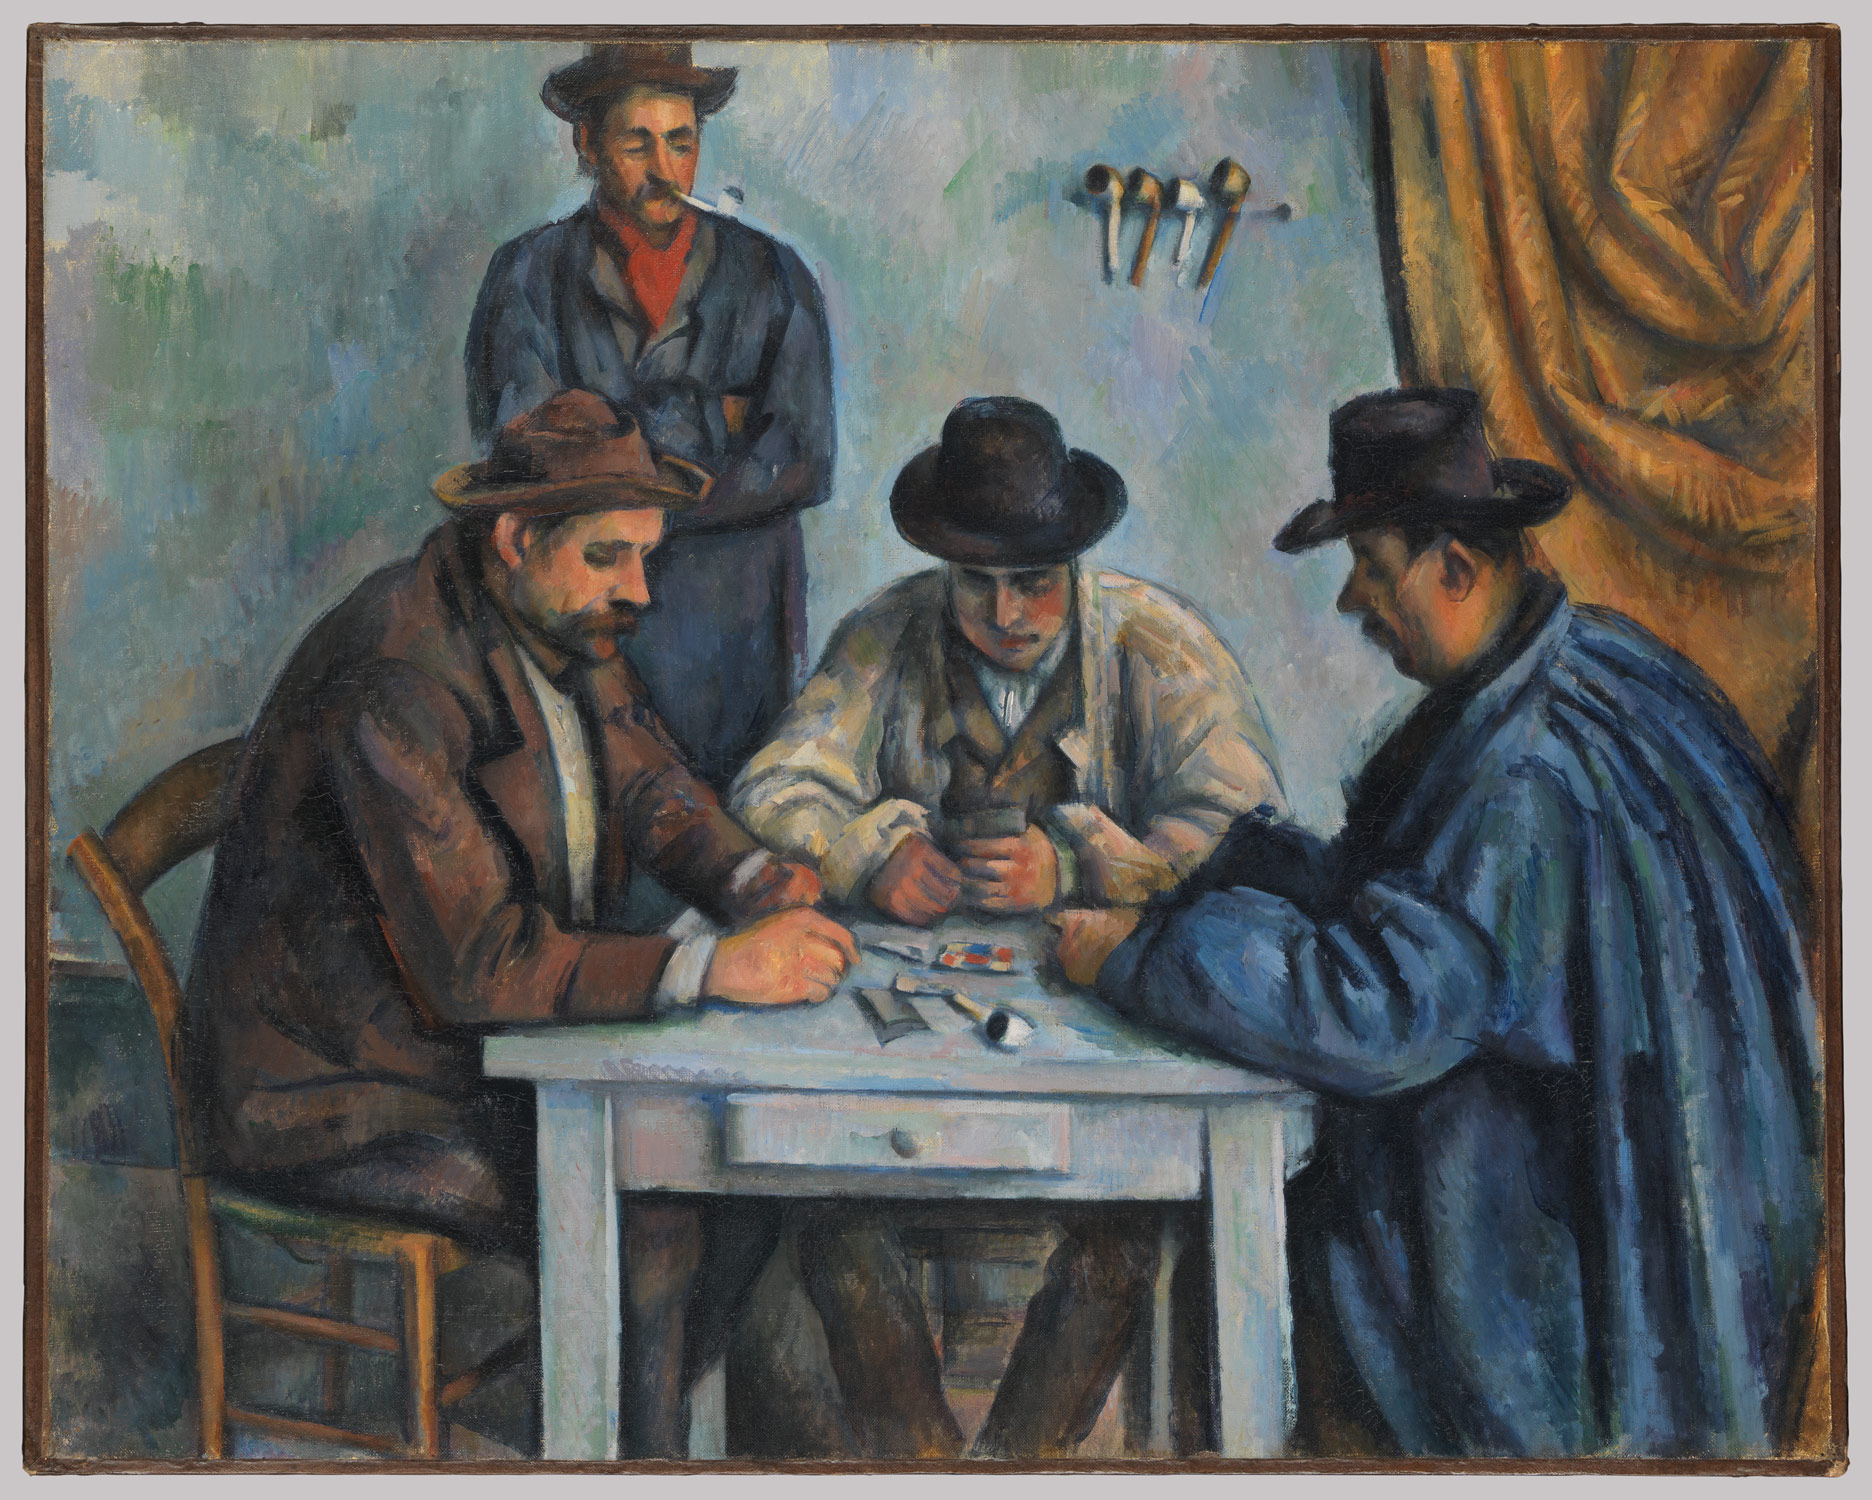 Les Joueurs de cartes by Paul Cézanne - environ 1894-1895 - 47.5 × 57 cm Musée d'Orsay